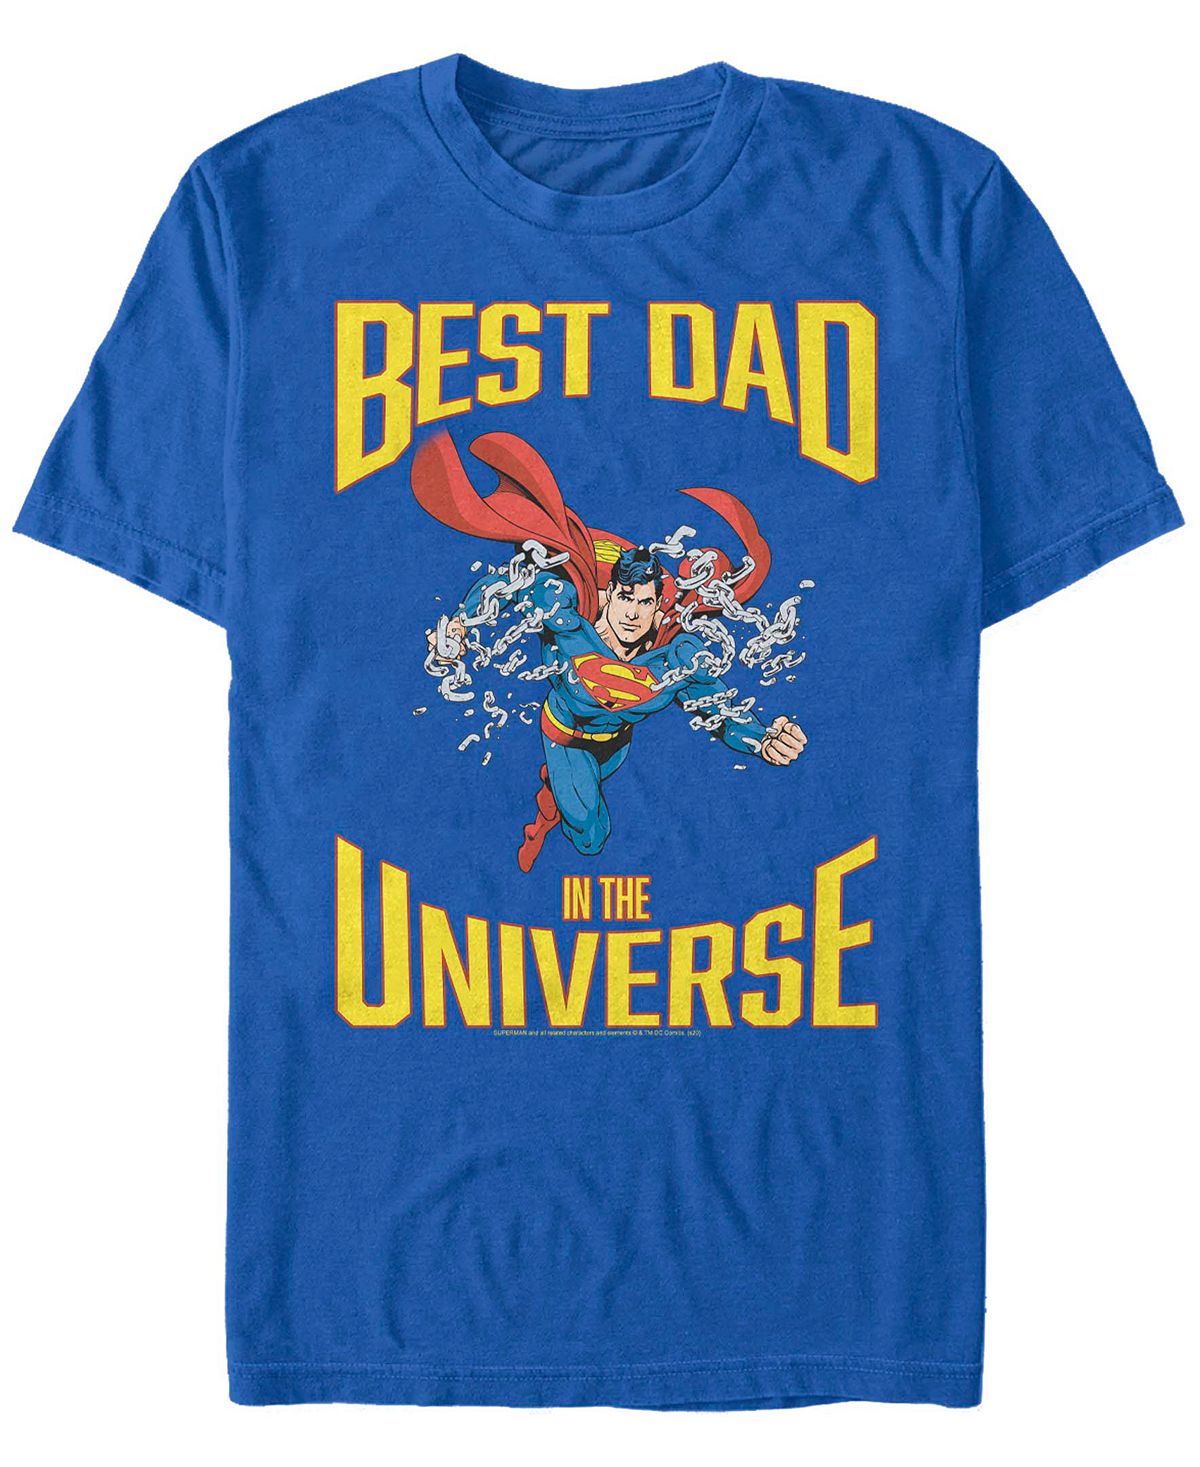 Мужская футболка с коротким рукавом superman super best dad Fifth Sun мягкая игрушка neca dc comics – superman 20 см